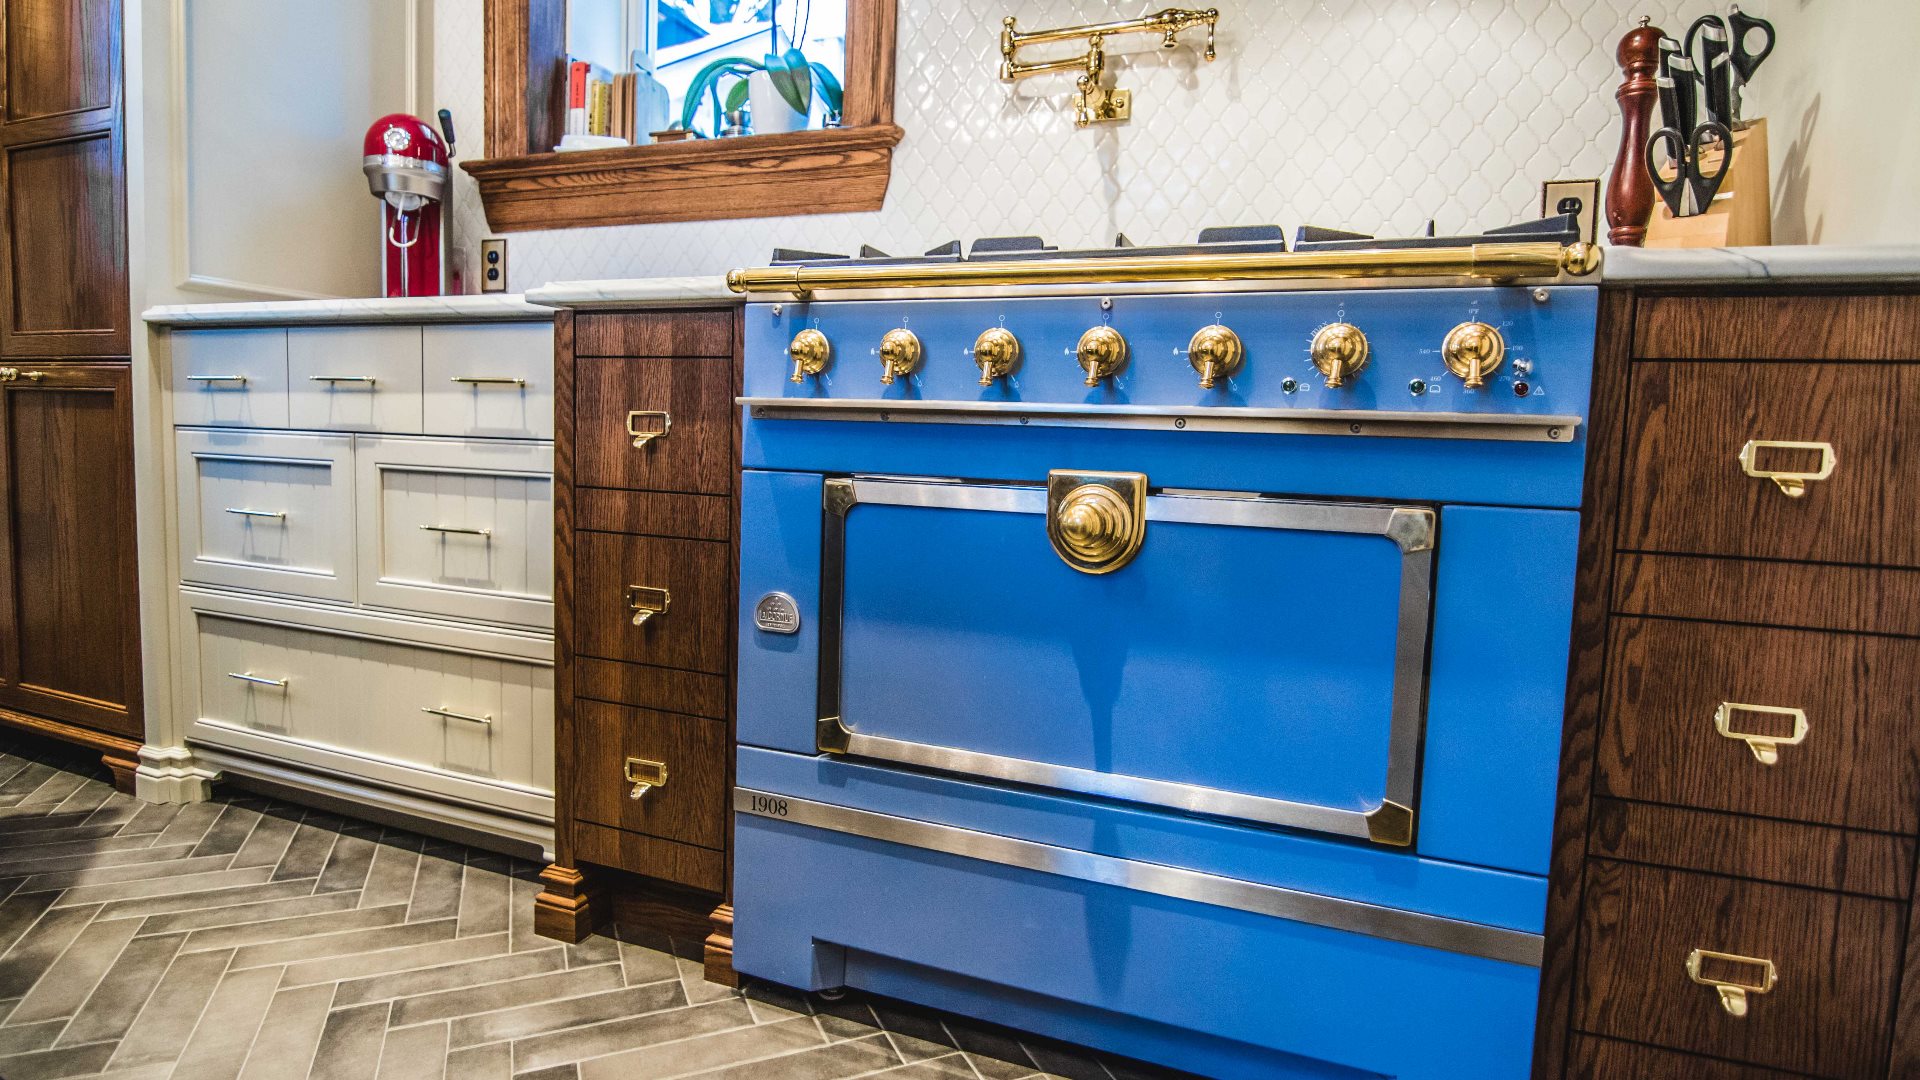 Cuisine classique aux armoires de cuisine en chêne. Un imposant four de couleur bleue est intégré à l'ensemble.